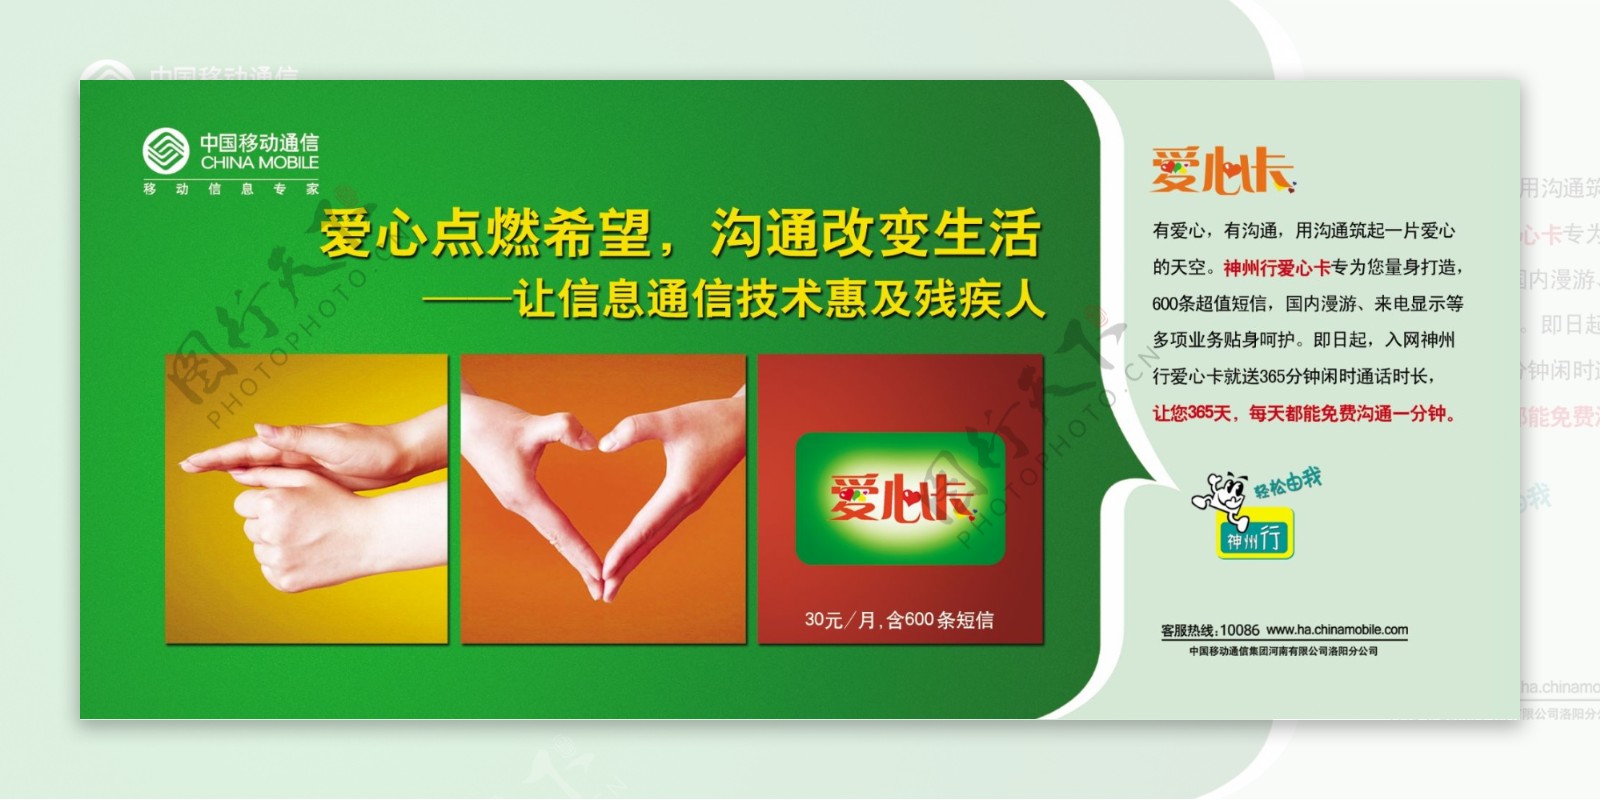 中国移动爱心卡单页图片